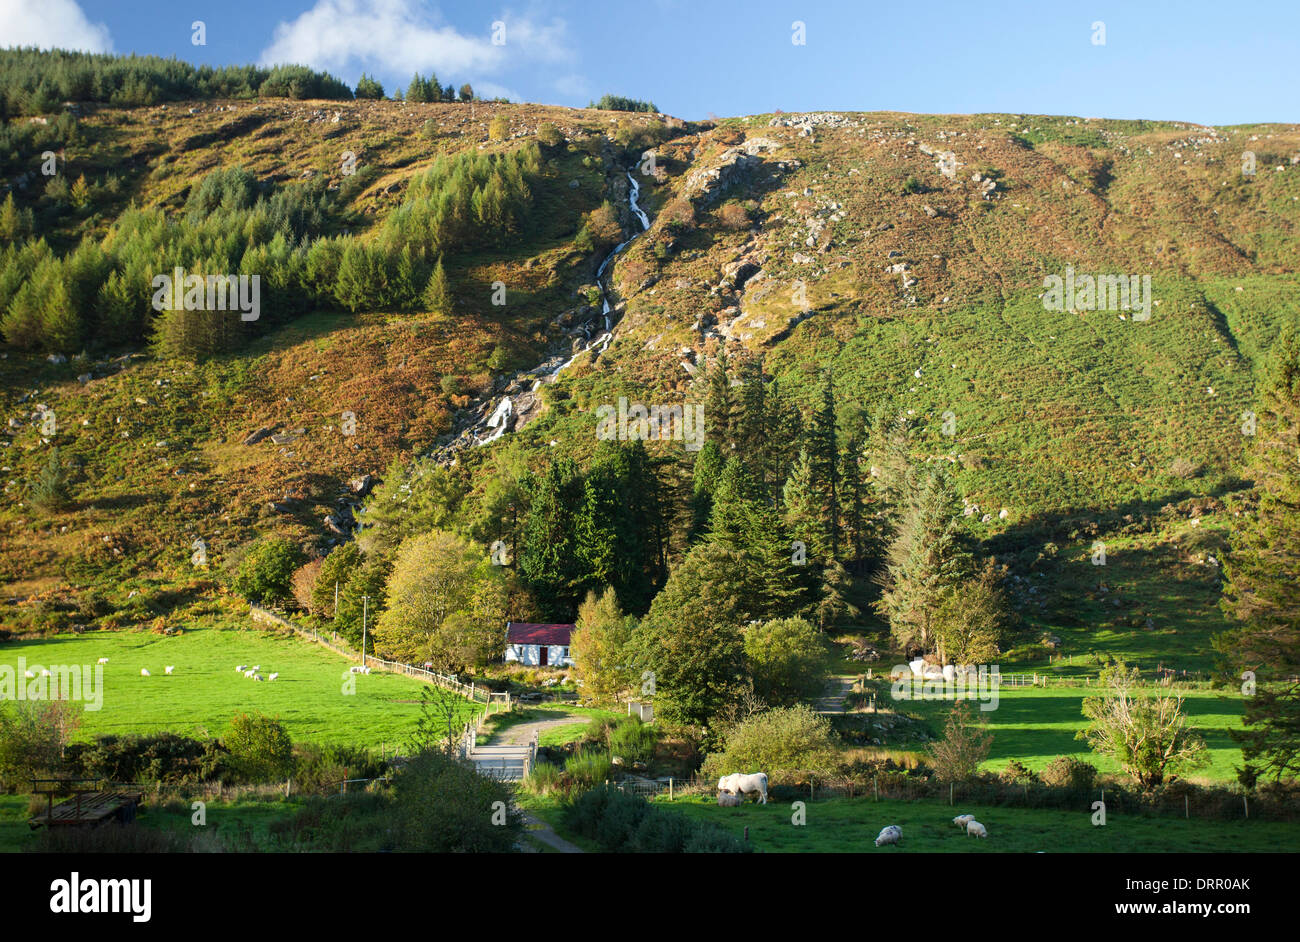 Chute d'Carrawaystick s'élève au-dessus d'une ferme à Glenmalure, Montagnes de Wicklow, comté de Wicklow, en Irlande. Banque D'Images